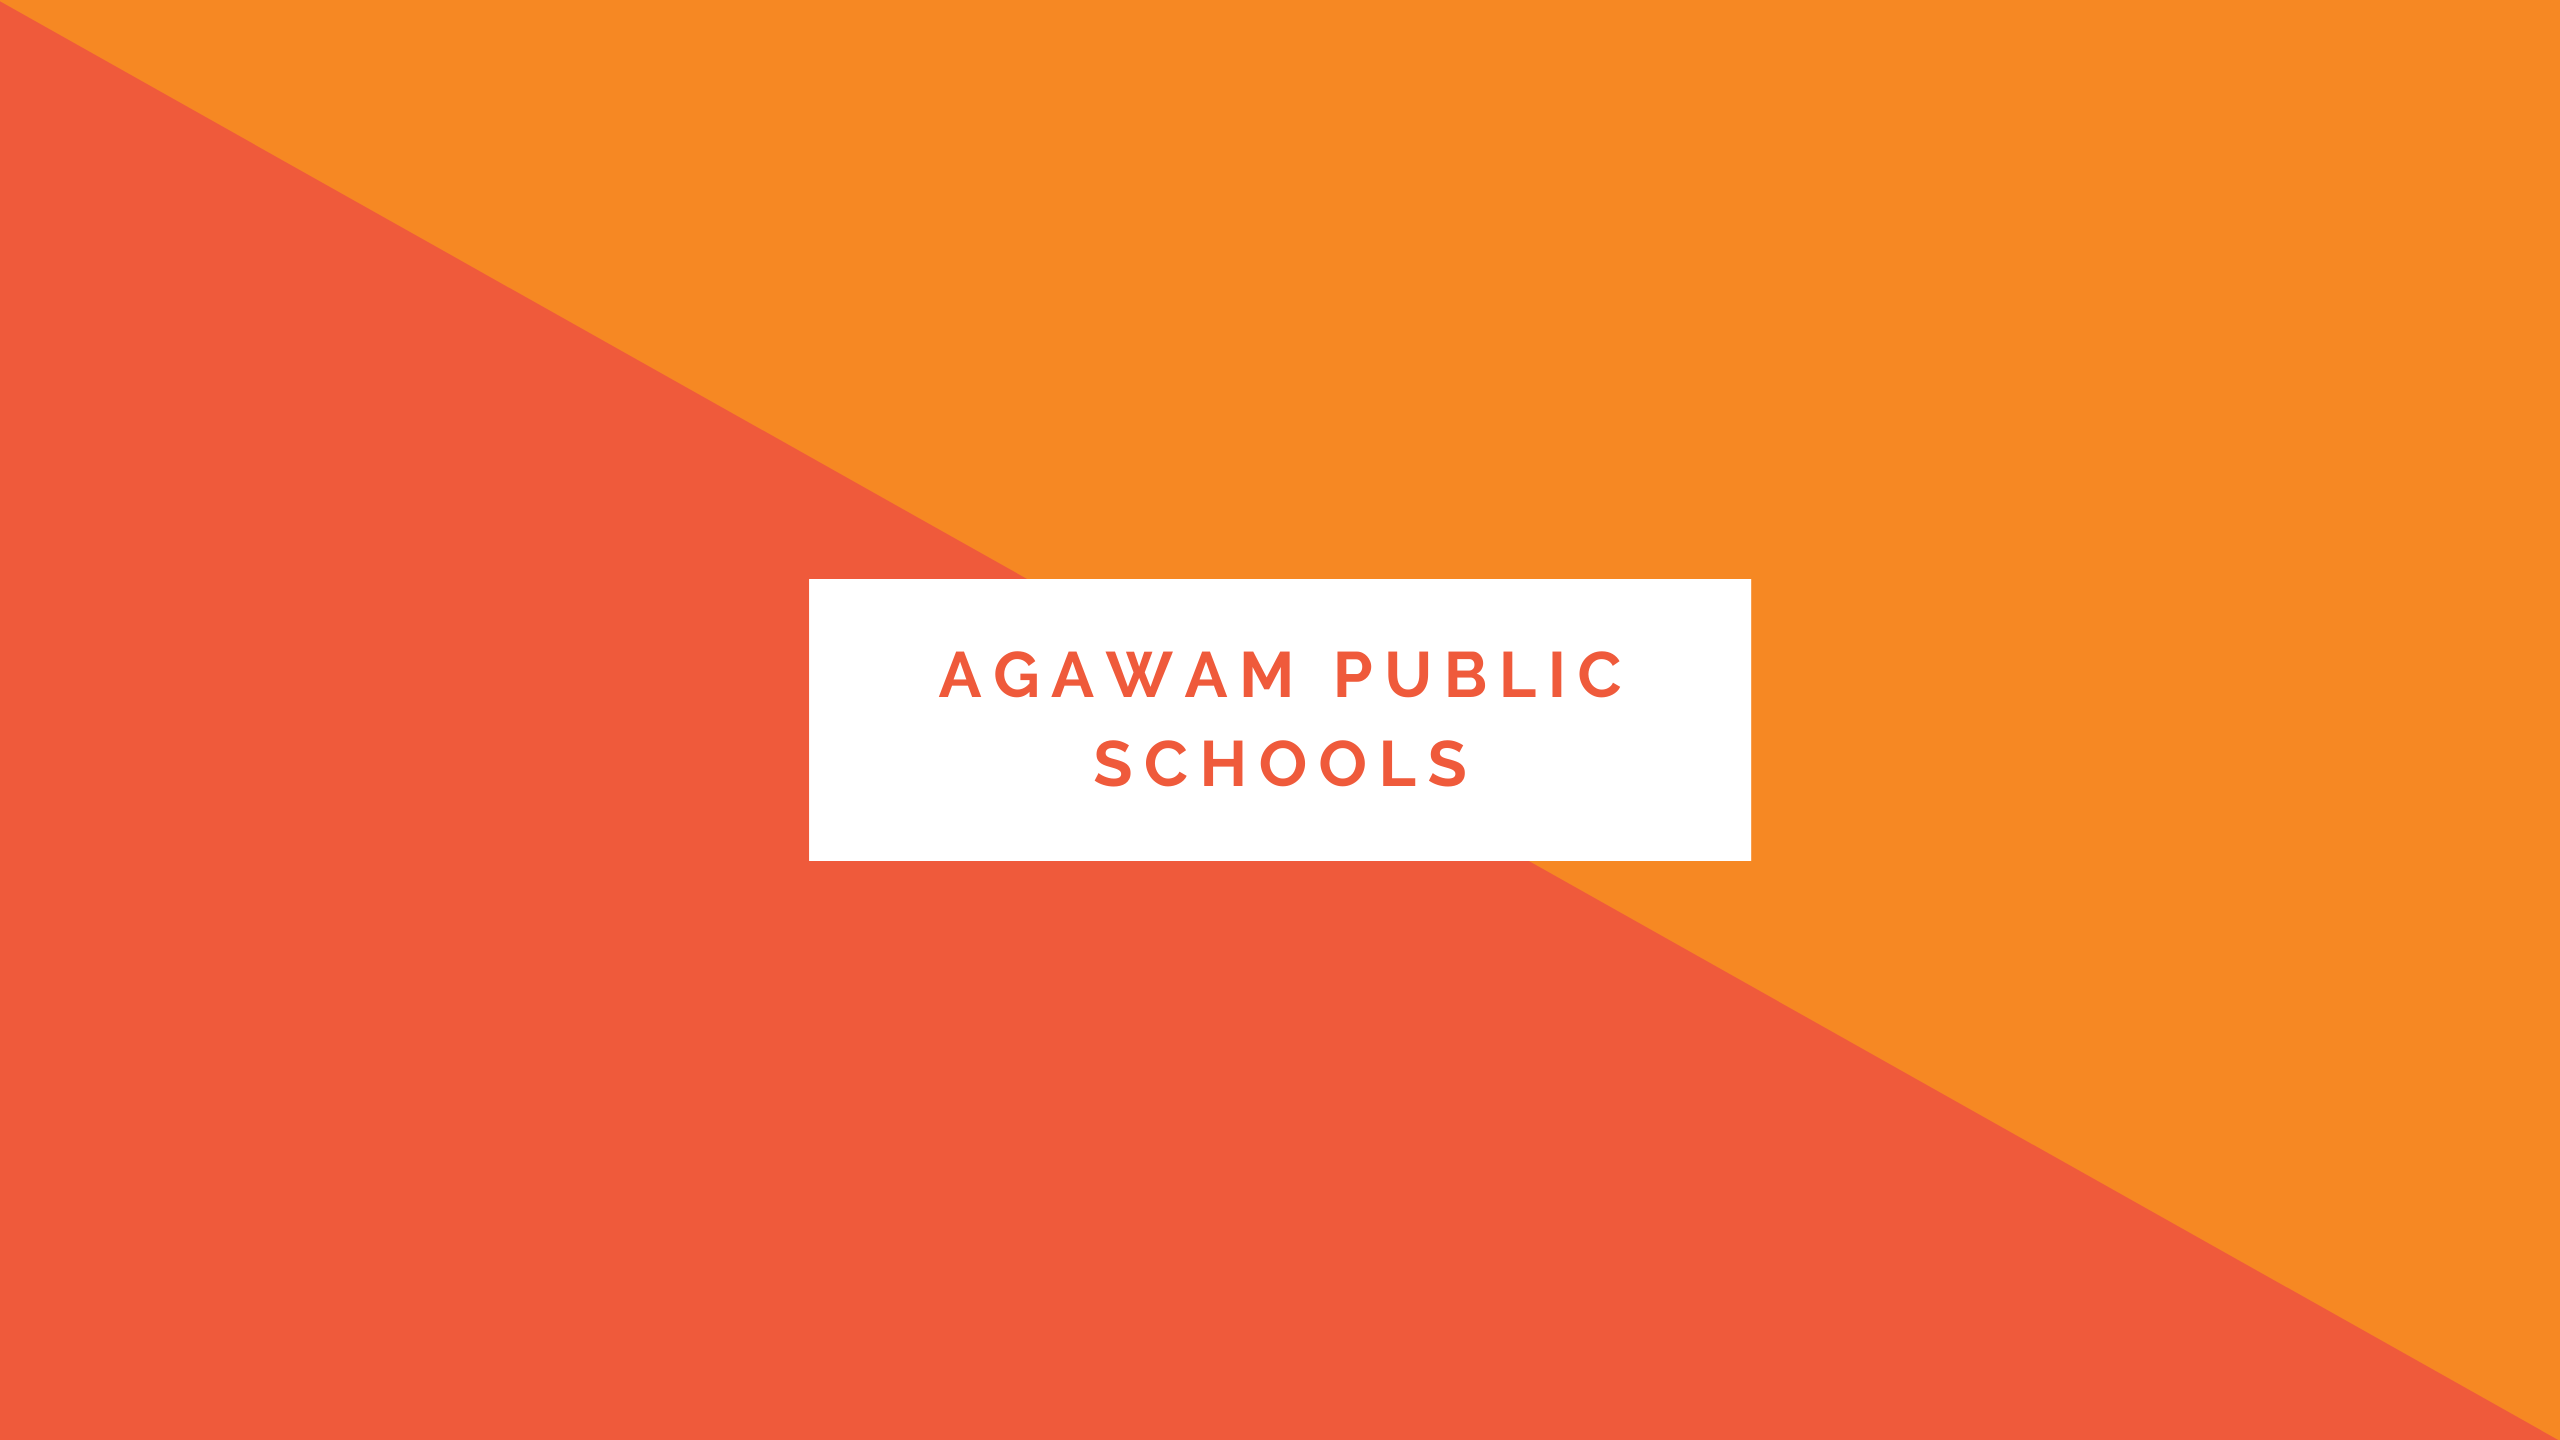 Agawam public schools